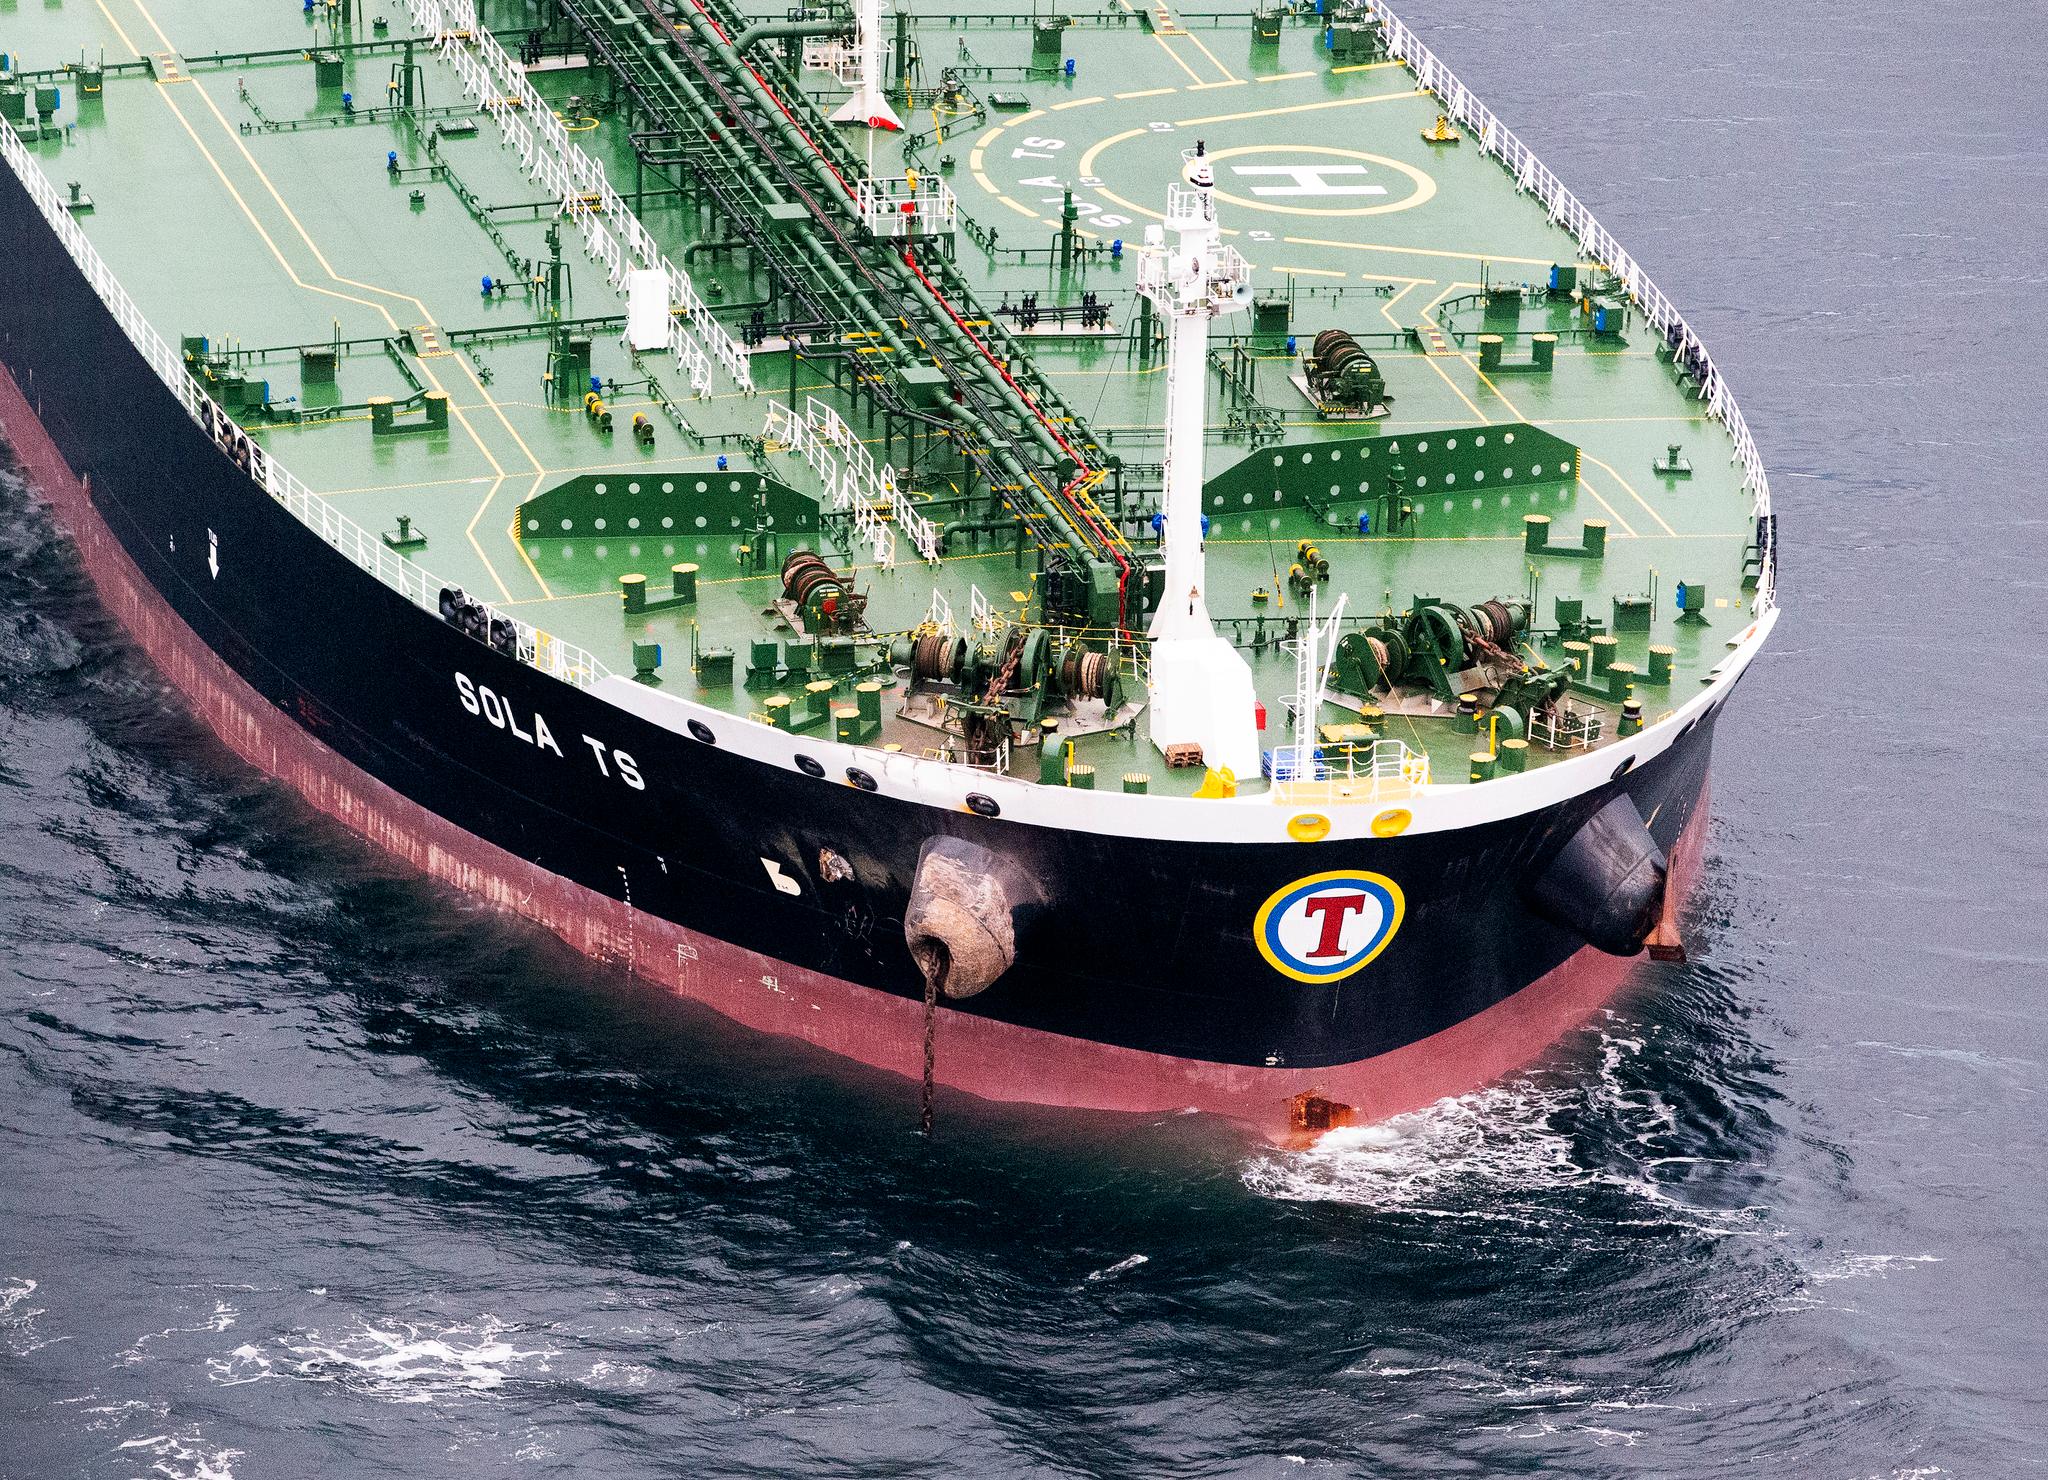 Tankskipet var lastet med nesten 10.000 millioner olje da ulykken skjedde. Tankskipet har kun fått mindre skader i sammenstøtet.